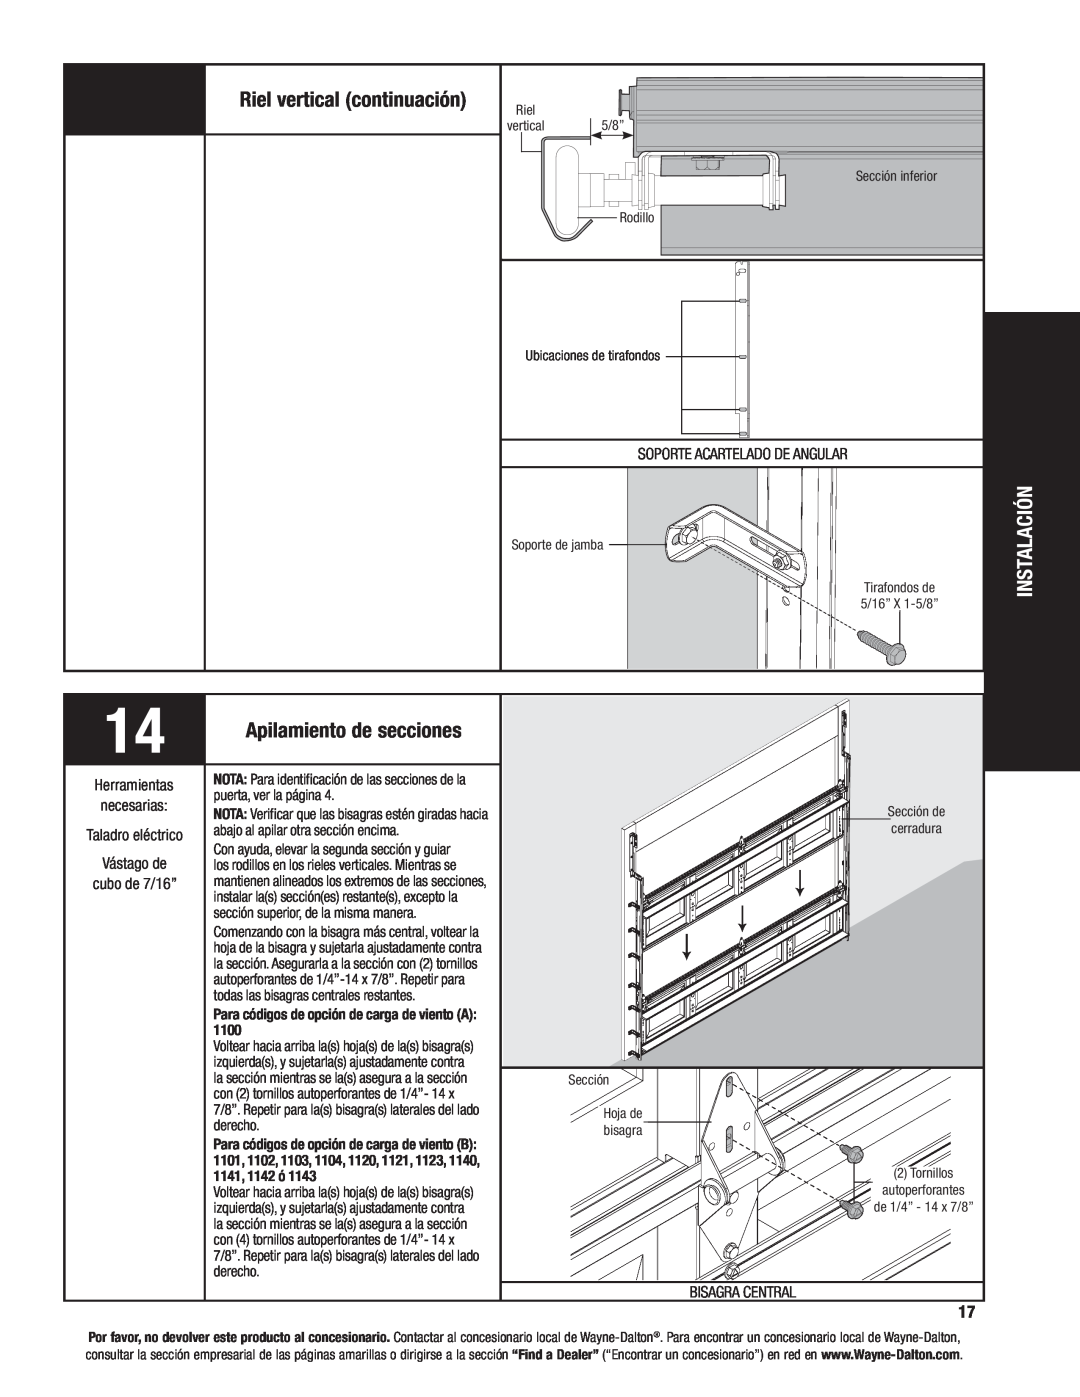 Wayne-Dalton 8200, 8000, 8100 manual Riel vertical continuación, Instalación, Apilamiento de secciones, Bisagra Central 